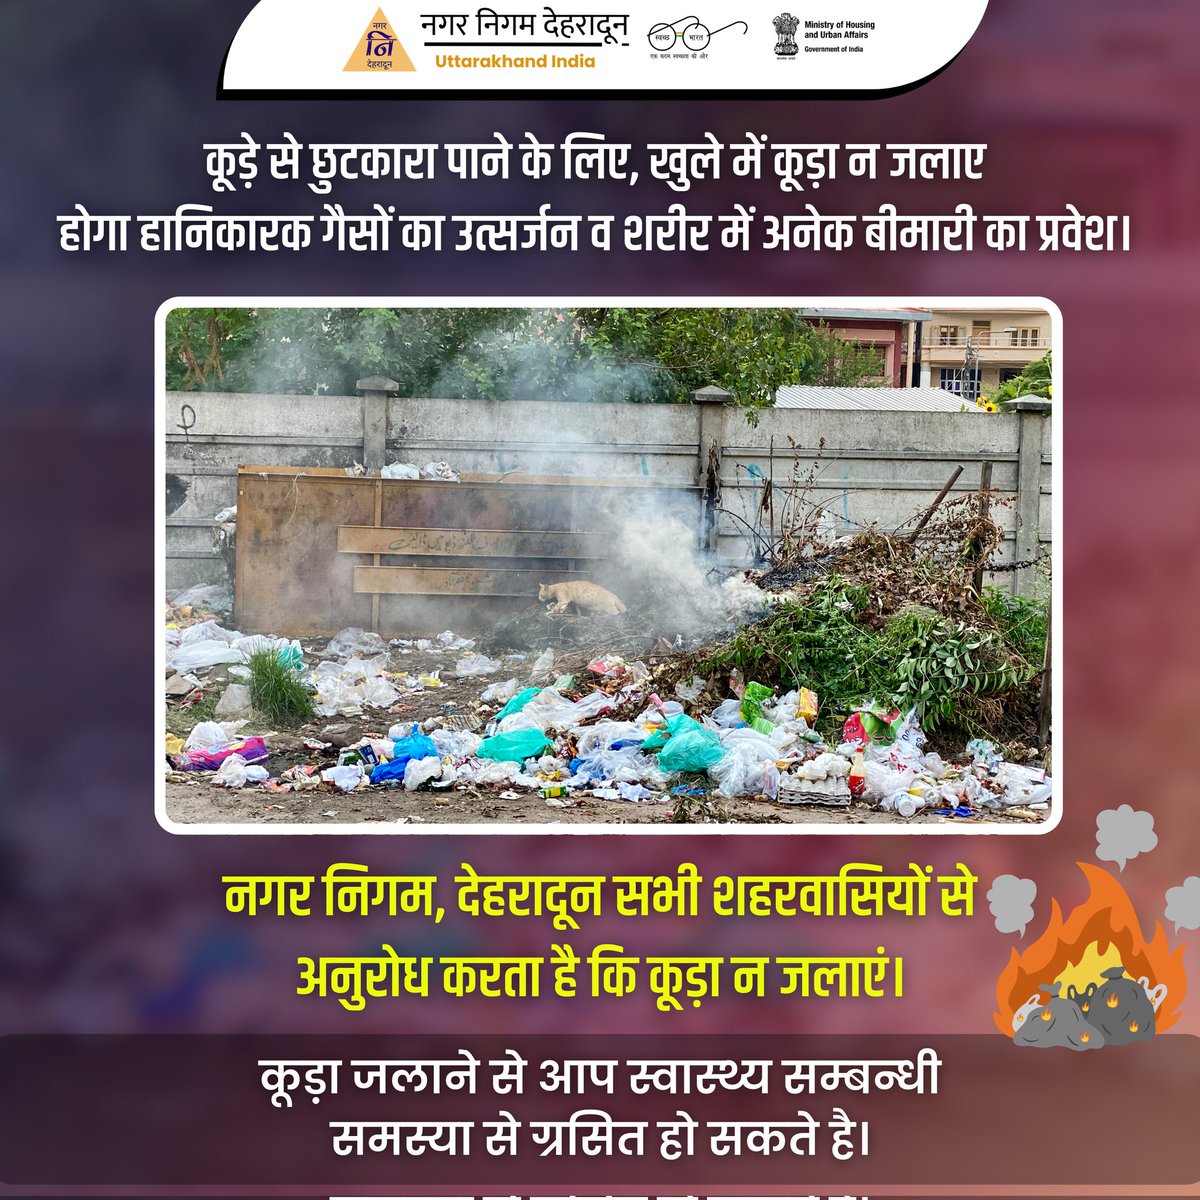 कूड़े से छुटकारा पाने के लिए, खुले में कूड़ा न जलाए 
होगा हानिकारक गैसों का उत्सर्जन व शरीर में अनेक बीमारी का प्रवेश। 

नगर निगम, देहरादून सभी शहरवासियों से अनुरोध करता है कि कूड़ा न जलाएं। कूड़े जलाने  से आप स्वास्थ्य सम्बन्धी समस्या से ग्रसित हो सकते है।

#GarbageFreeIndia